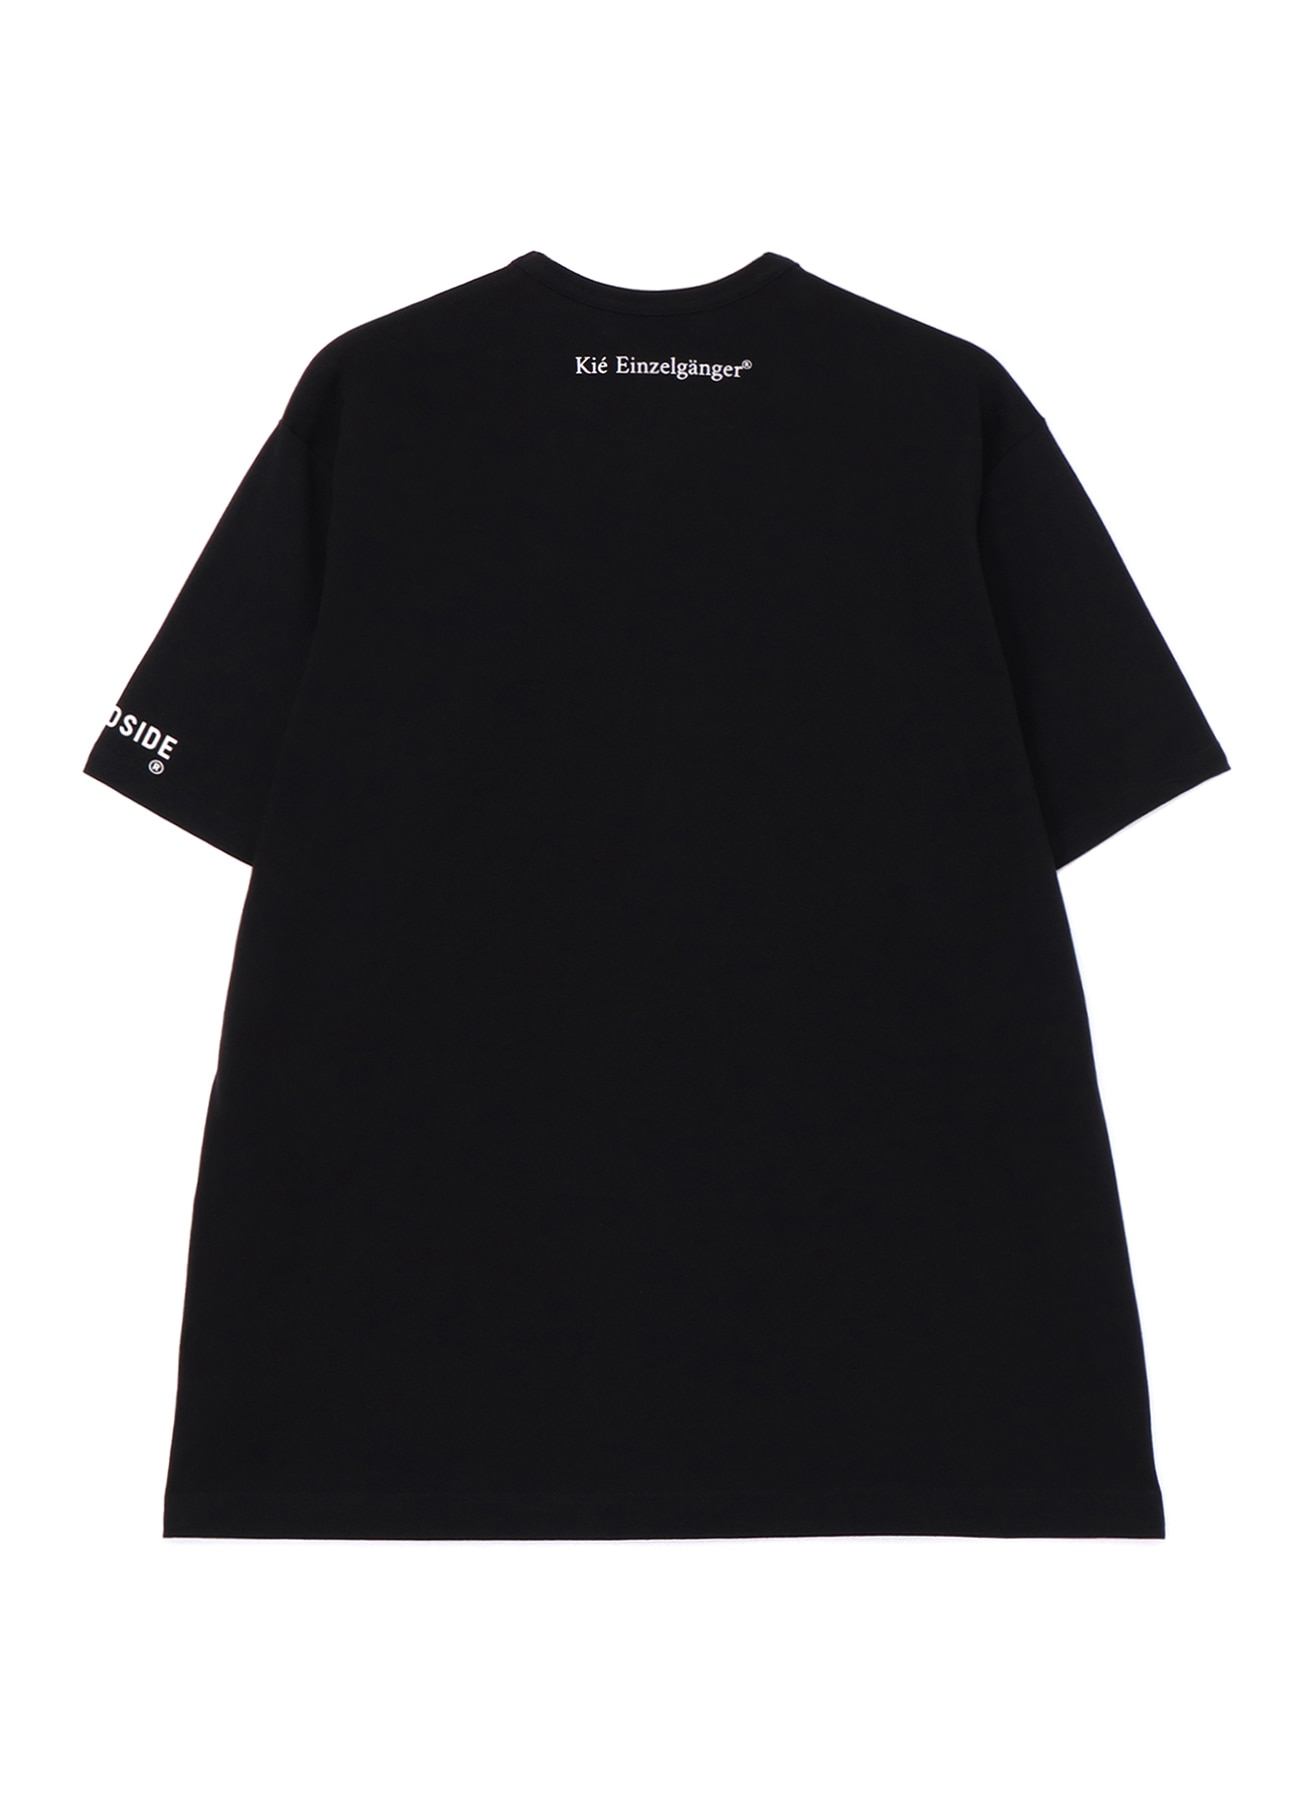 WILDSIDE × Kie Einzelganger Portrait T-shirt A(FREE SIZE BLACK): Kie ...